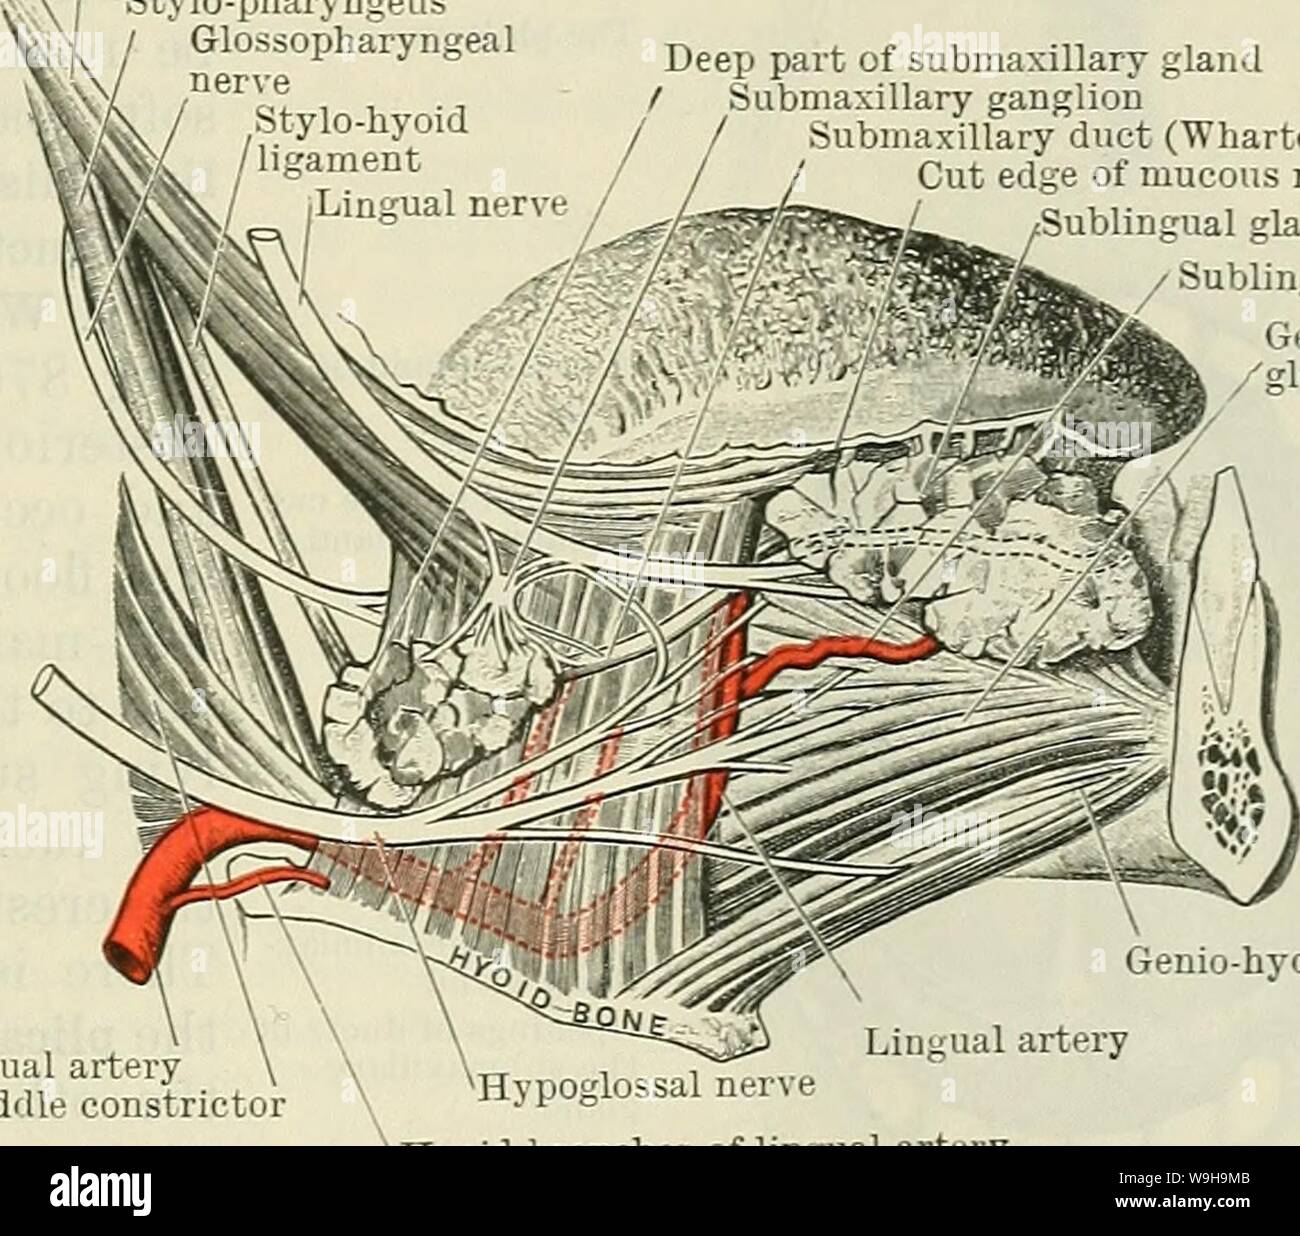 Archiv Bild von Seite 1140 von Cunningham's Lehrbuch der Anatomie (1914). Cunninghams Lehrbuch der Anatomie cunninghamstextb 00 cunn Jahr: 1914 (DEN MUND. 1107 Öffnung des Mundes. Es ist der Teil der Buchse nimmt der Abstand zwischen den Lippen und Wangen extern und die Zähne und Zahnfleisch intern. In der normalen ruhenden Zustand, wenn der Mund ist geschlossen und die Lippen und die Zähne sind in Kontakt, die Vertiefung ist praktisch durch die Tagung der Wände ausgelöscht, und es wird nur ein Schlitz - wie Intervall, mit einem schmalen Dach und Boden, die durch die Reflexion der Schleim gebildet Stockfoto